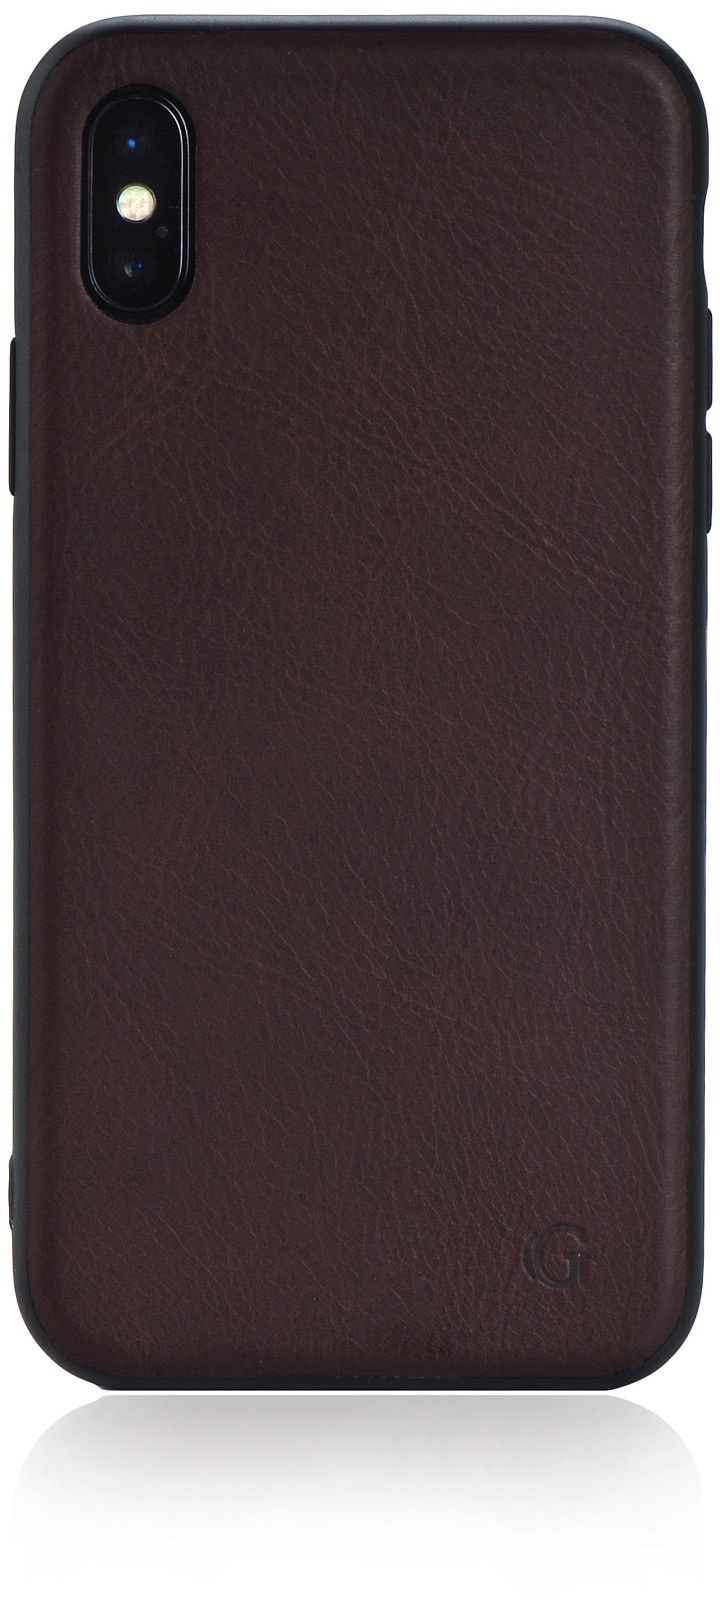 Чехол для сотового телефона Gurdini Premium Leather Case brown GPLCBW-XS01 для Apple iPhone X/XS 5.8